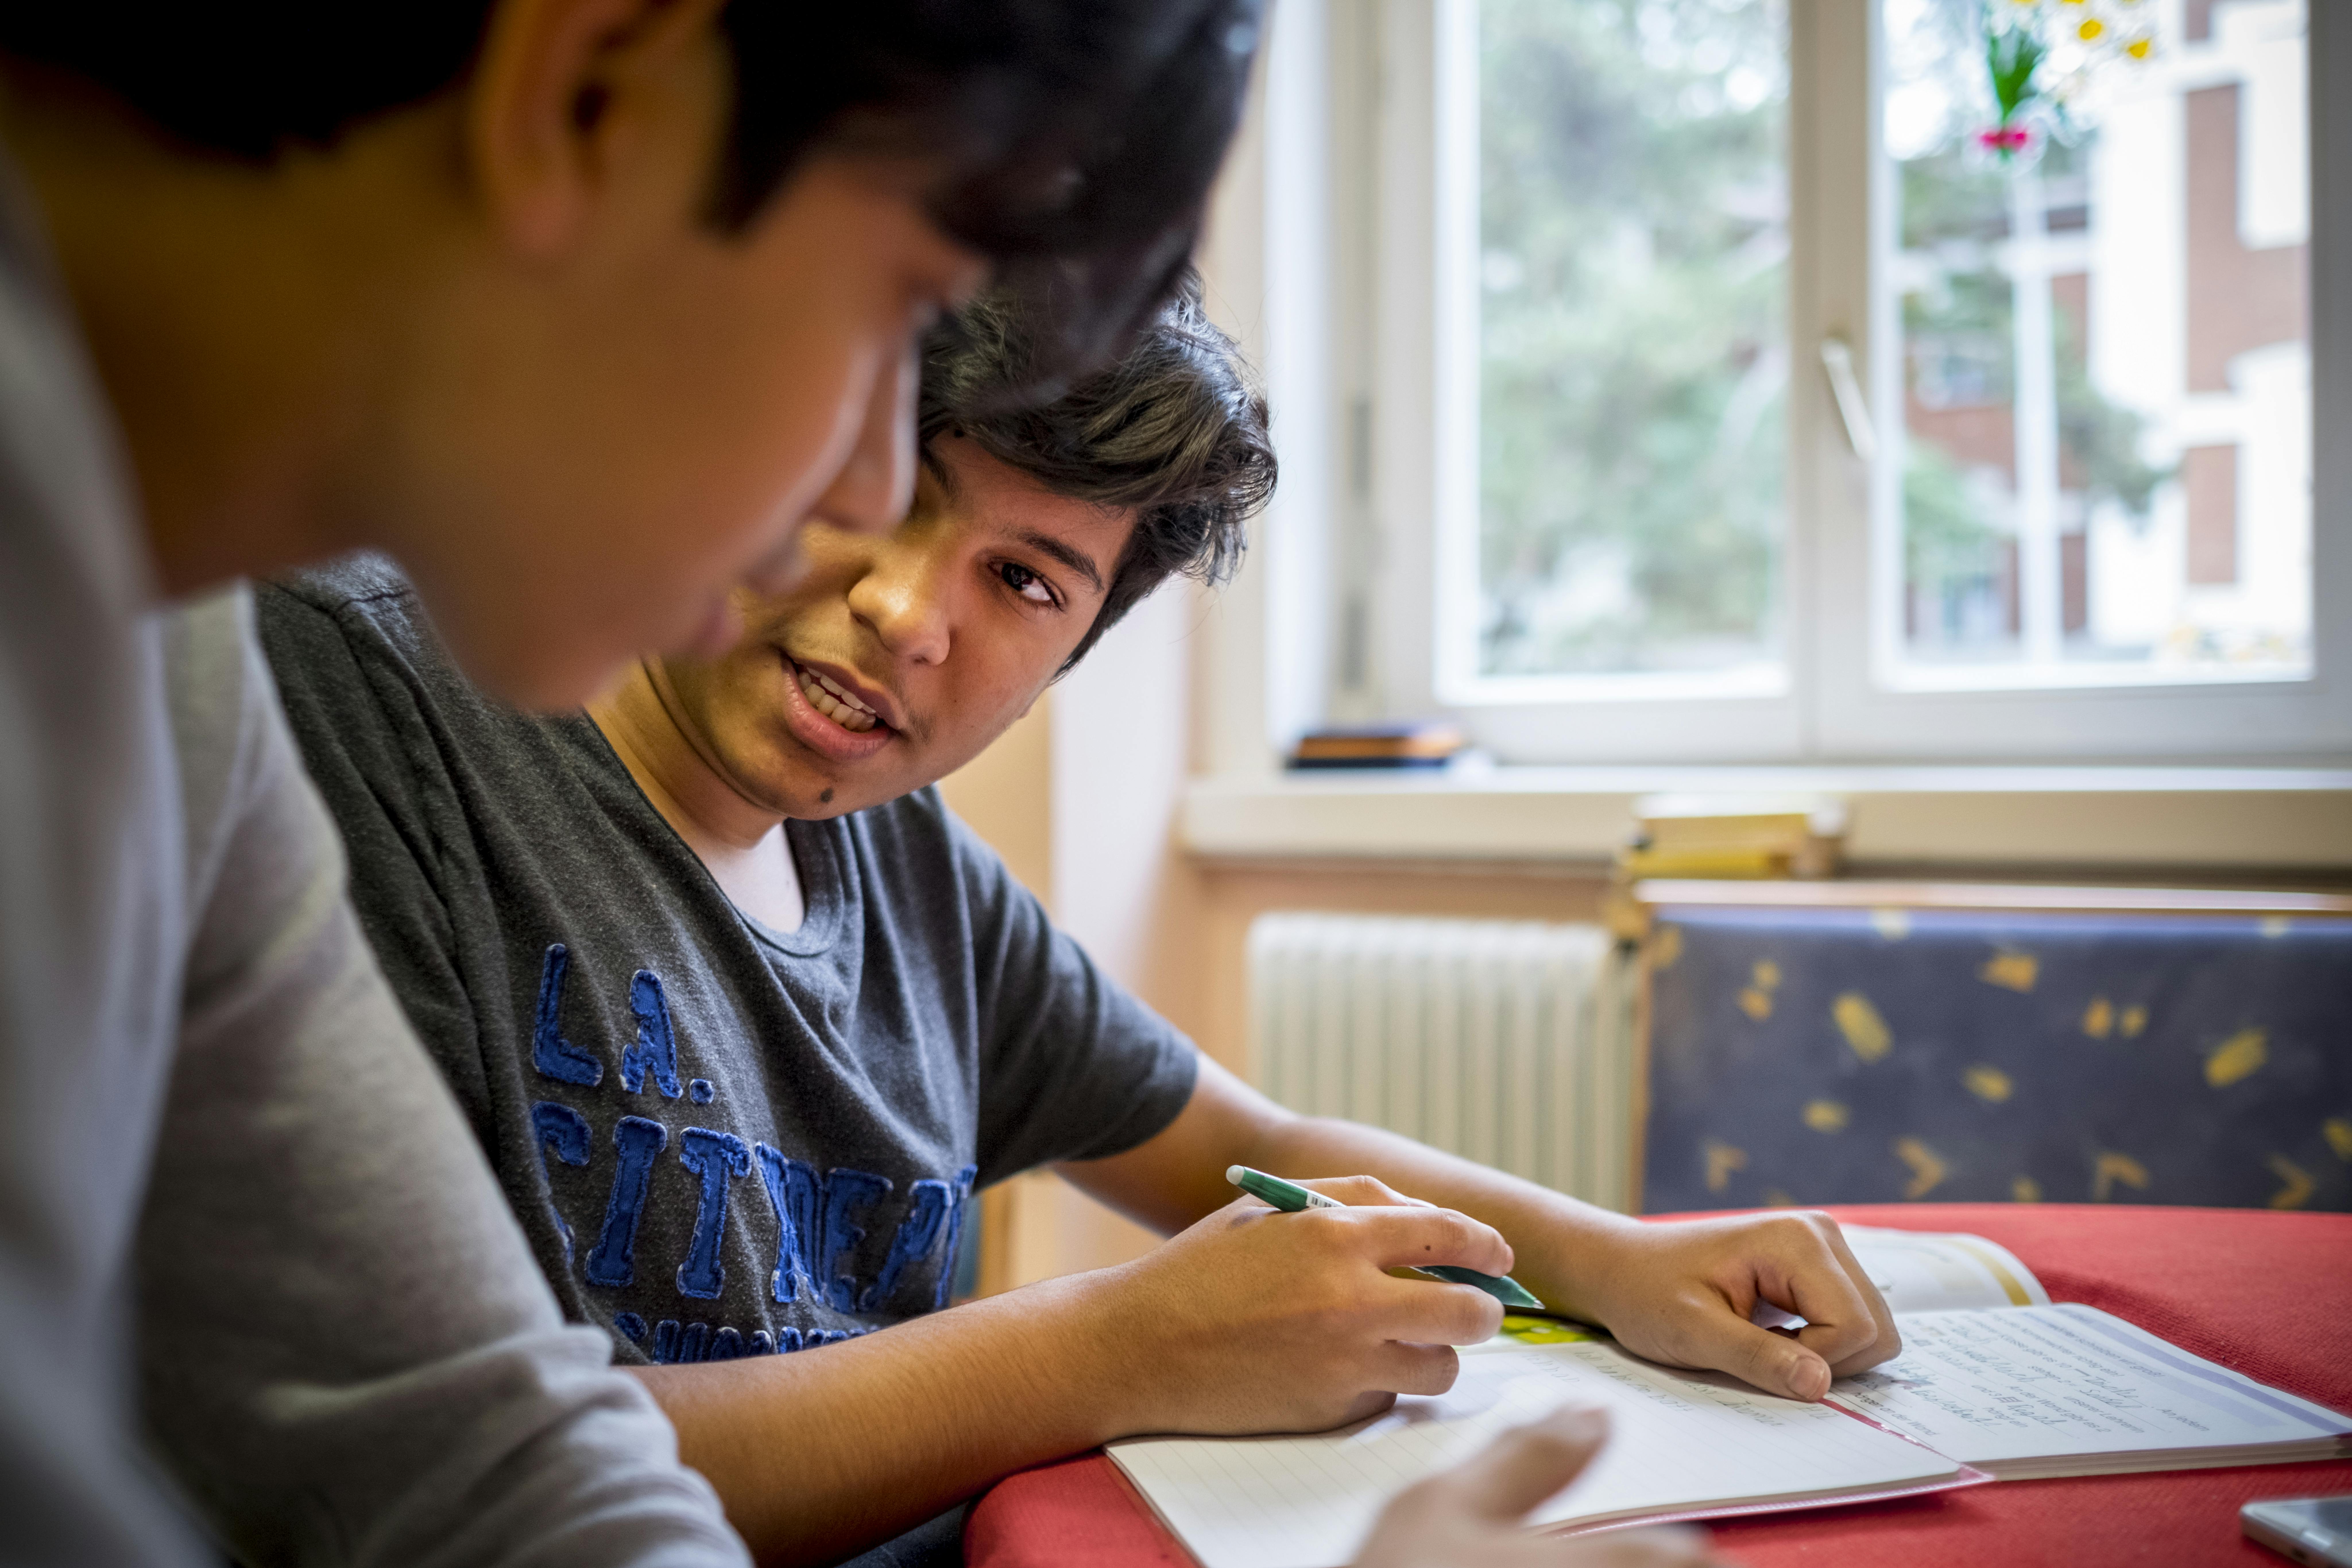 Sajad Al-Faraji, 16 anni, riceve aiuto da suo fratello Zein, 14 anni, con i suoi compiti di tedesco nella loro stanza in un ospedale per anziani abbandonato nel centro di Vienna, Austria